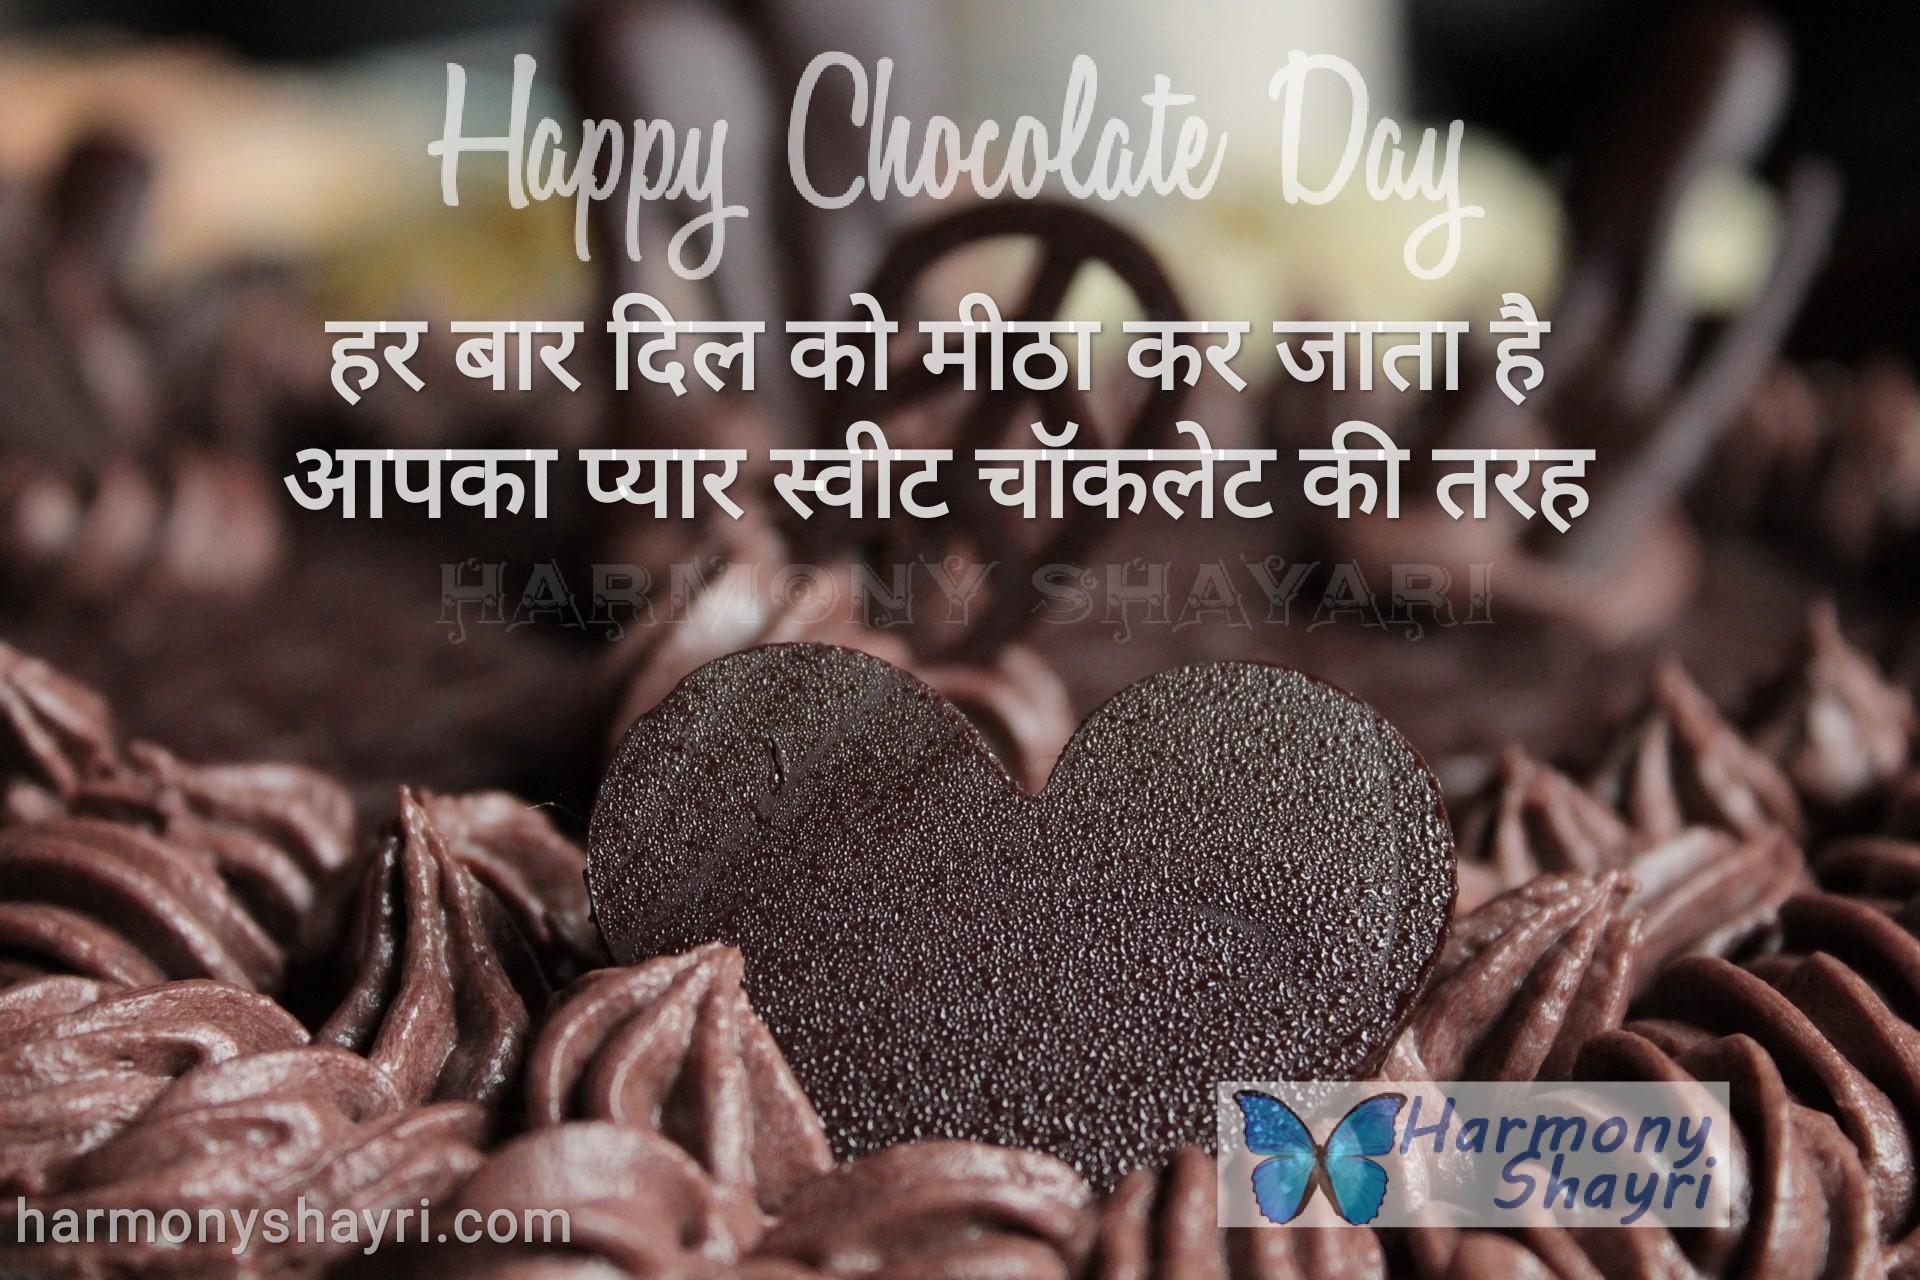 Har baar dil ko meetha kar jata hai – Happy Chocolate Day